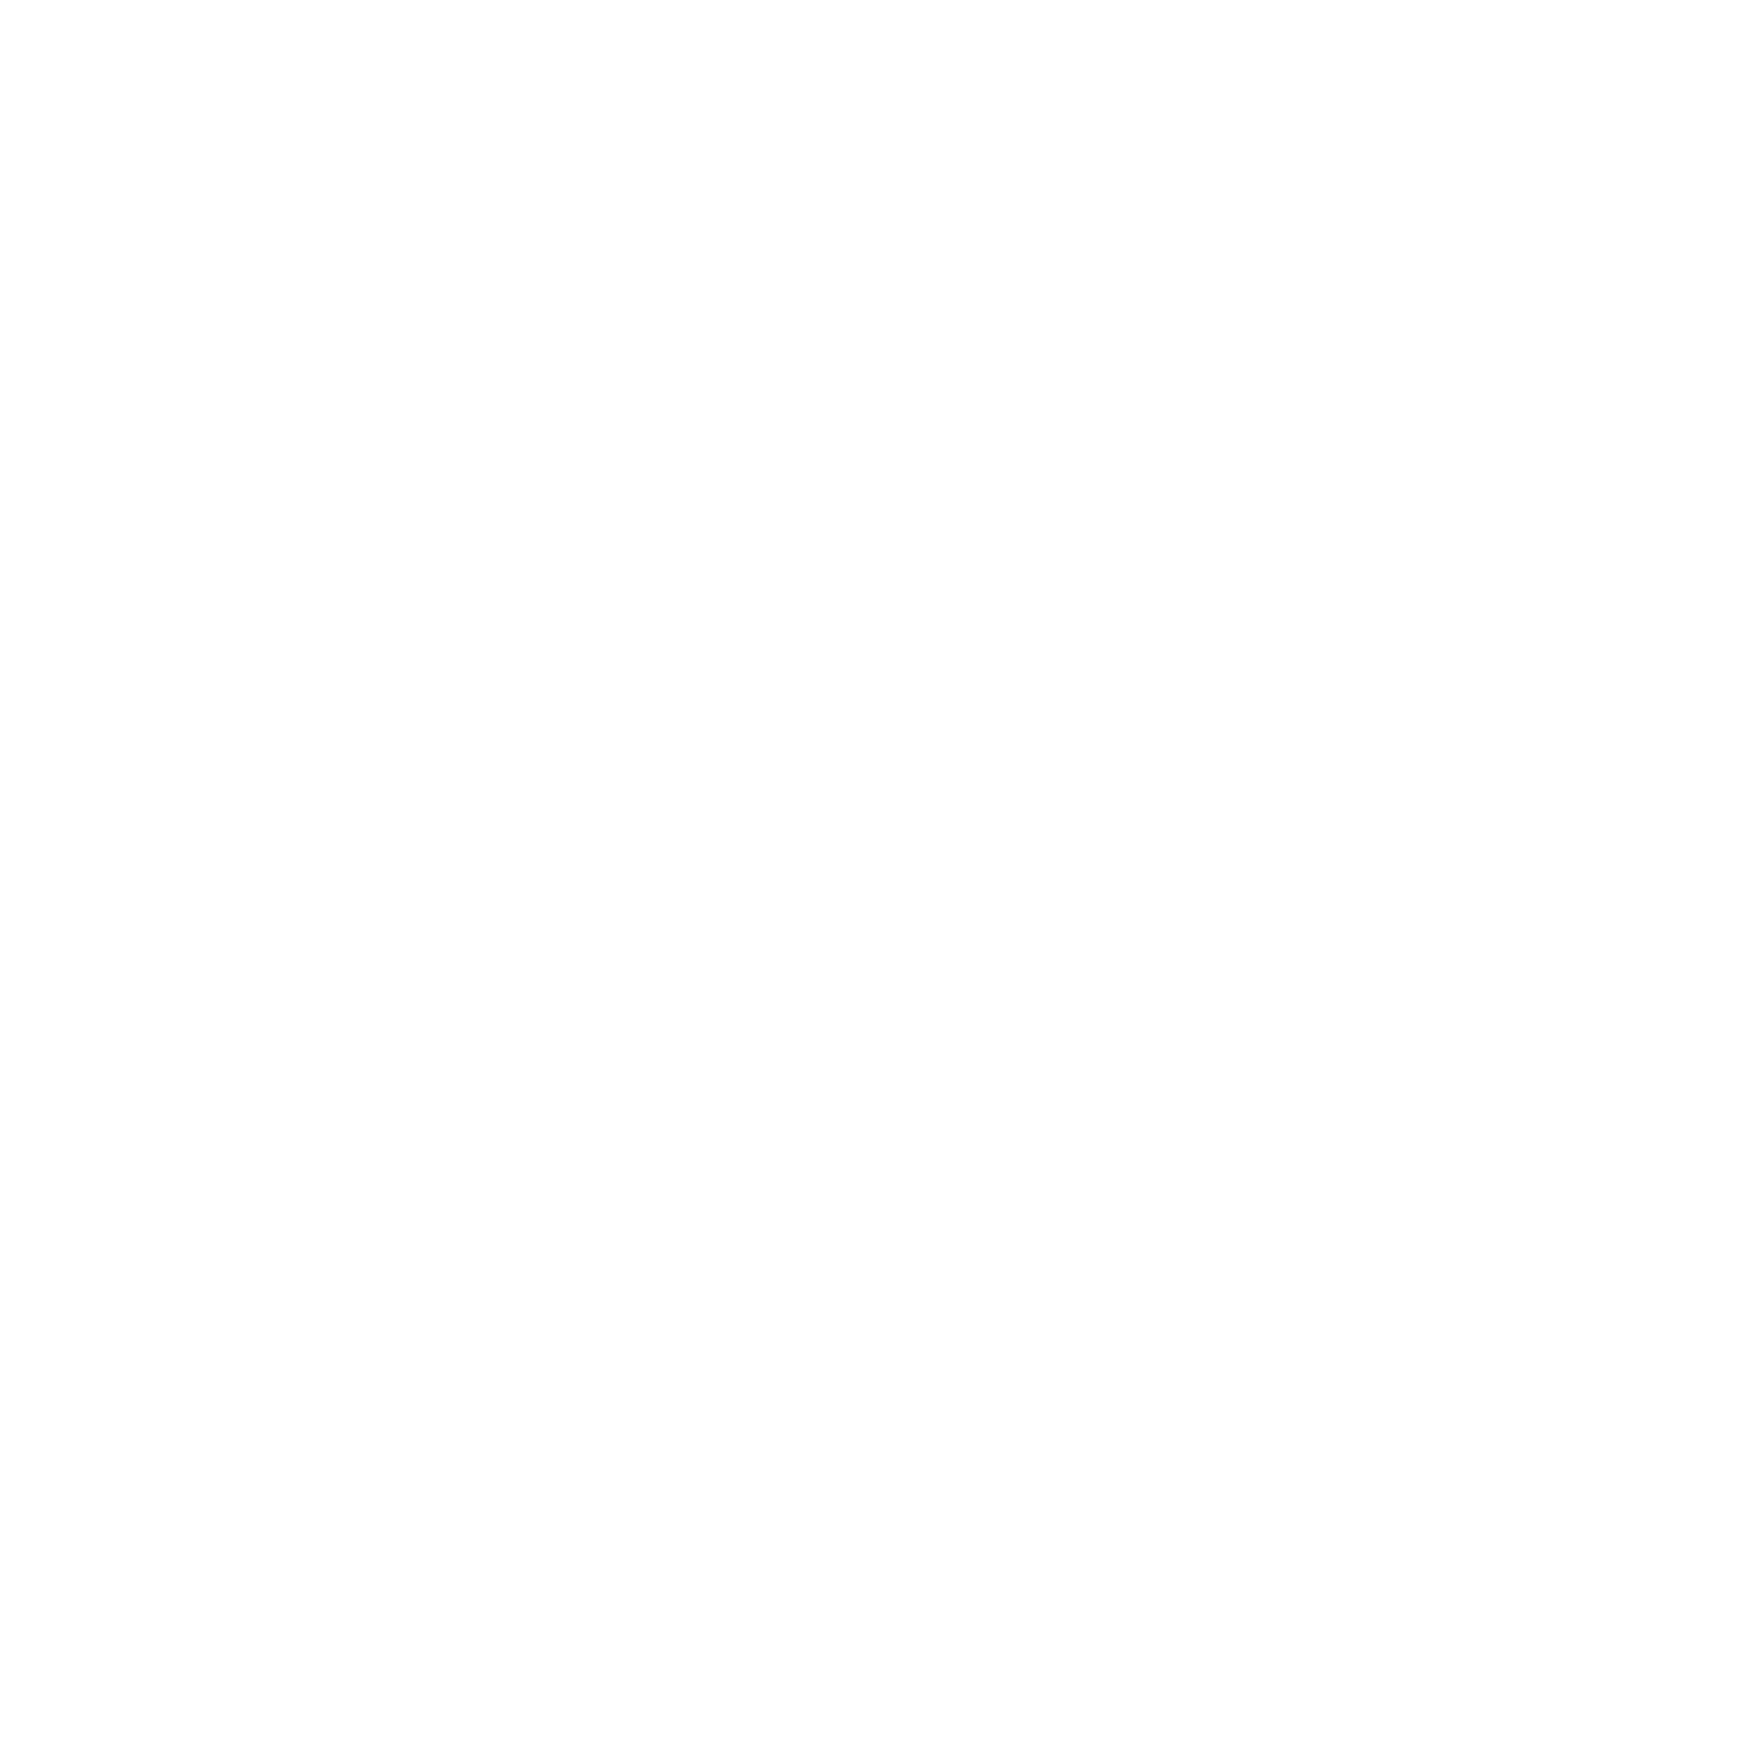 Vitruvian text around a circle